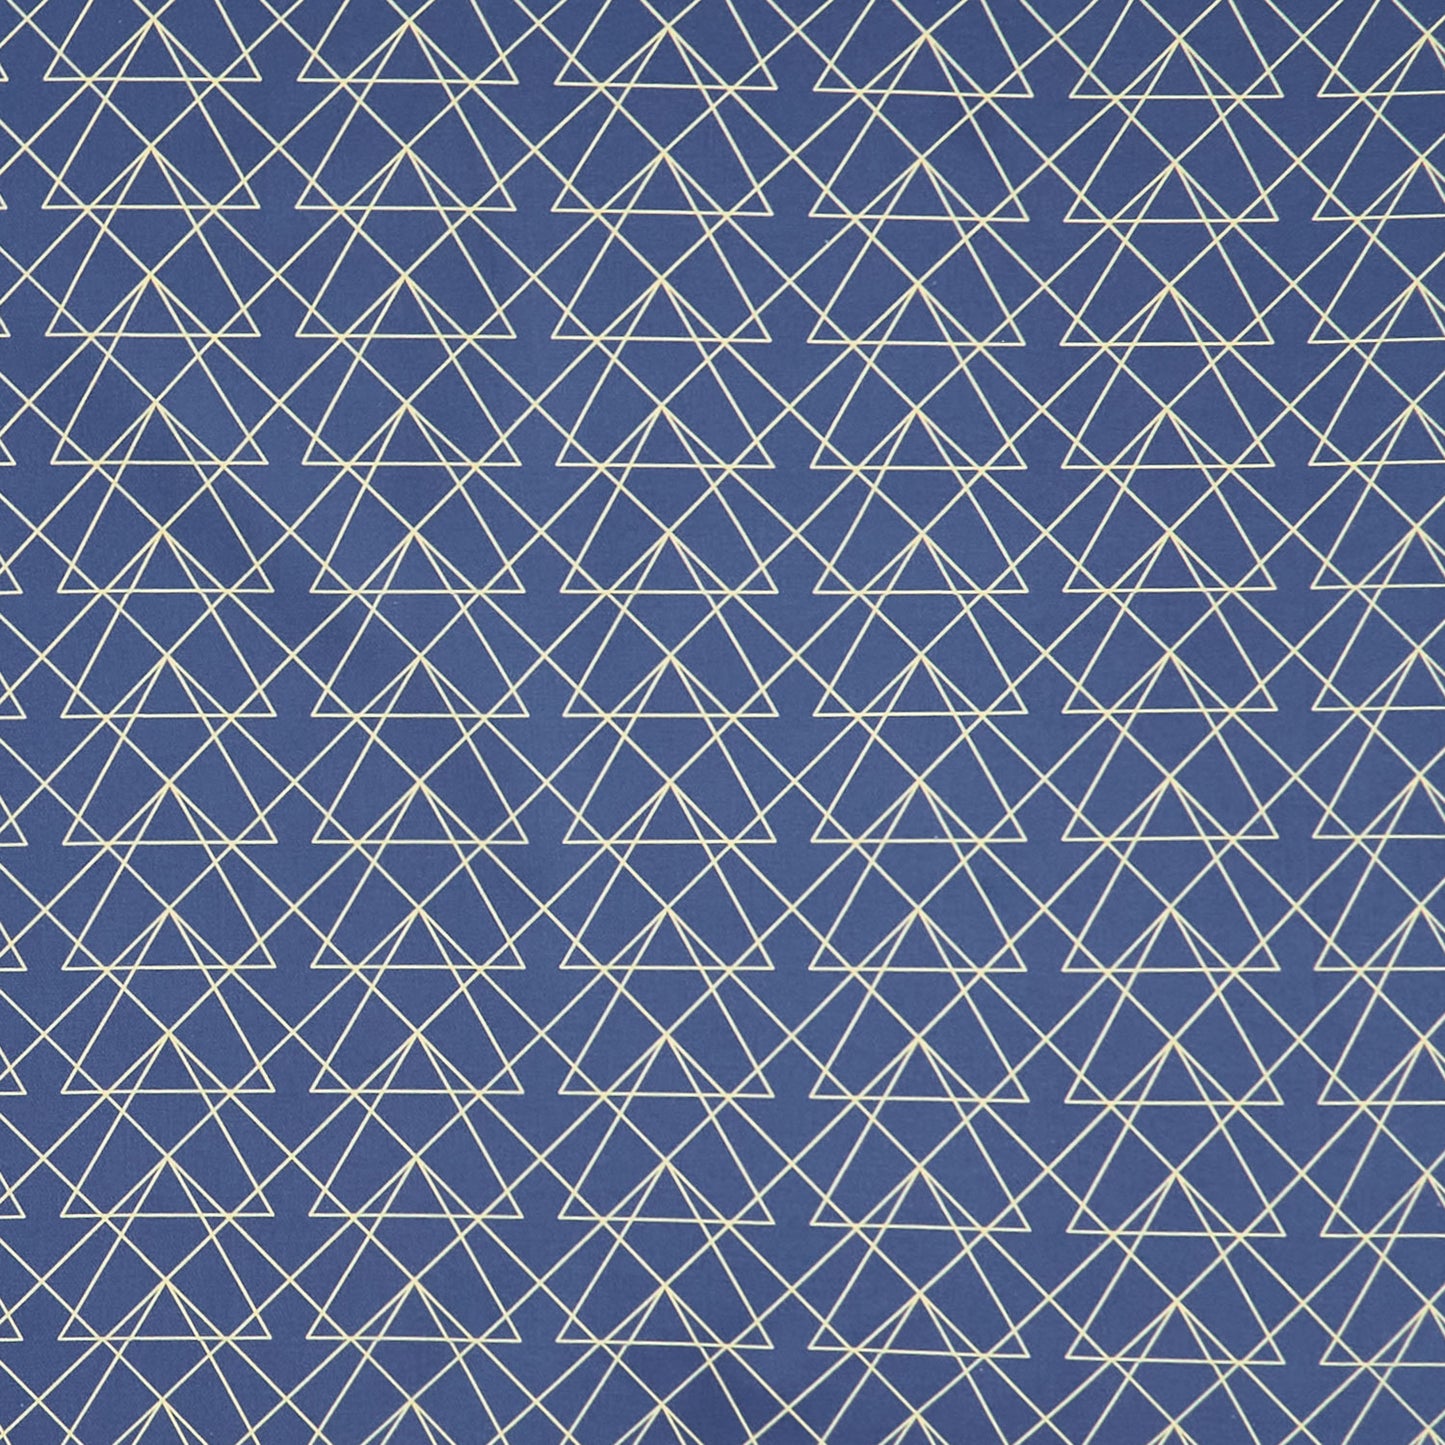 Autumn Triangle Geometric - Blue Denim Yardage Primary Image